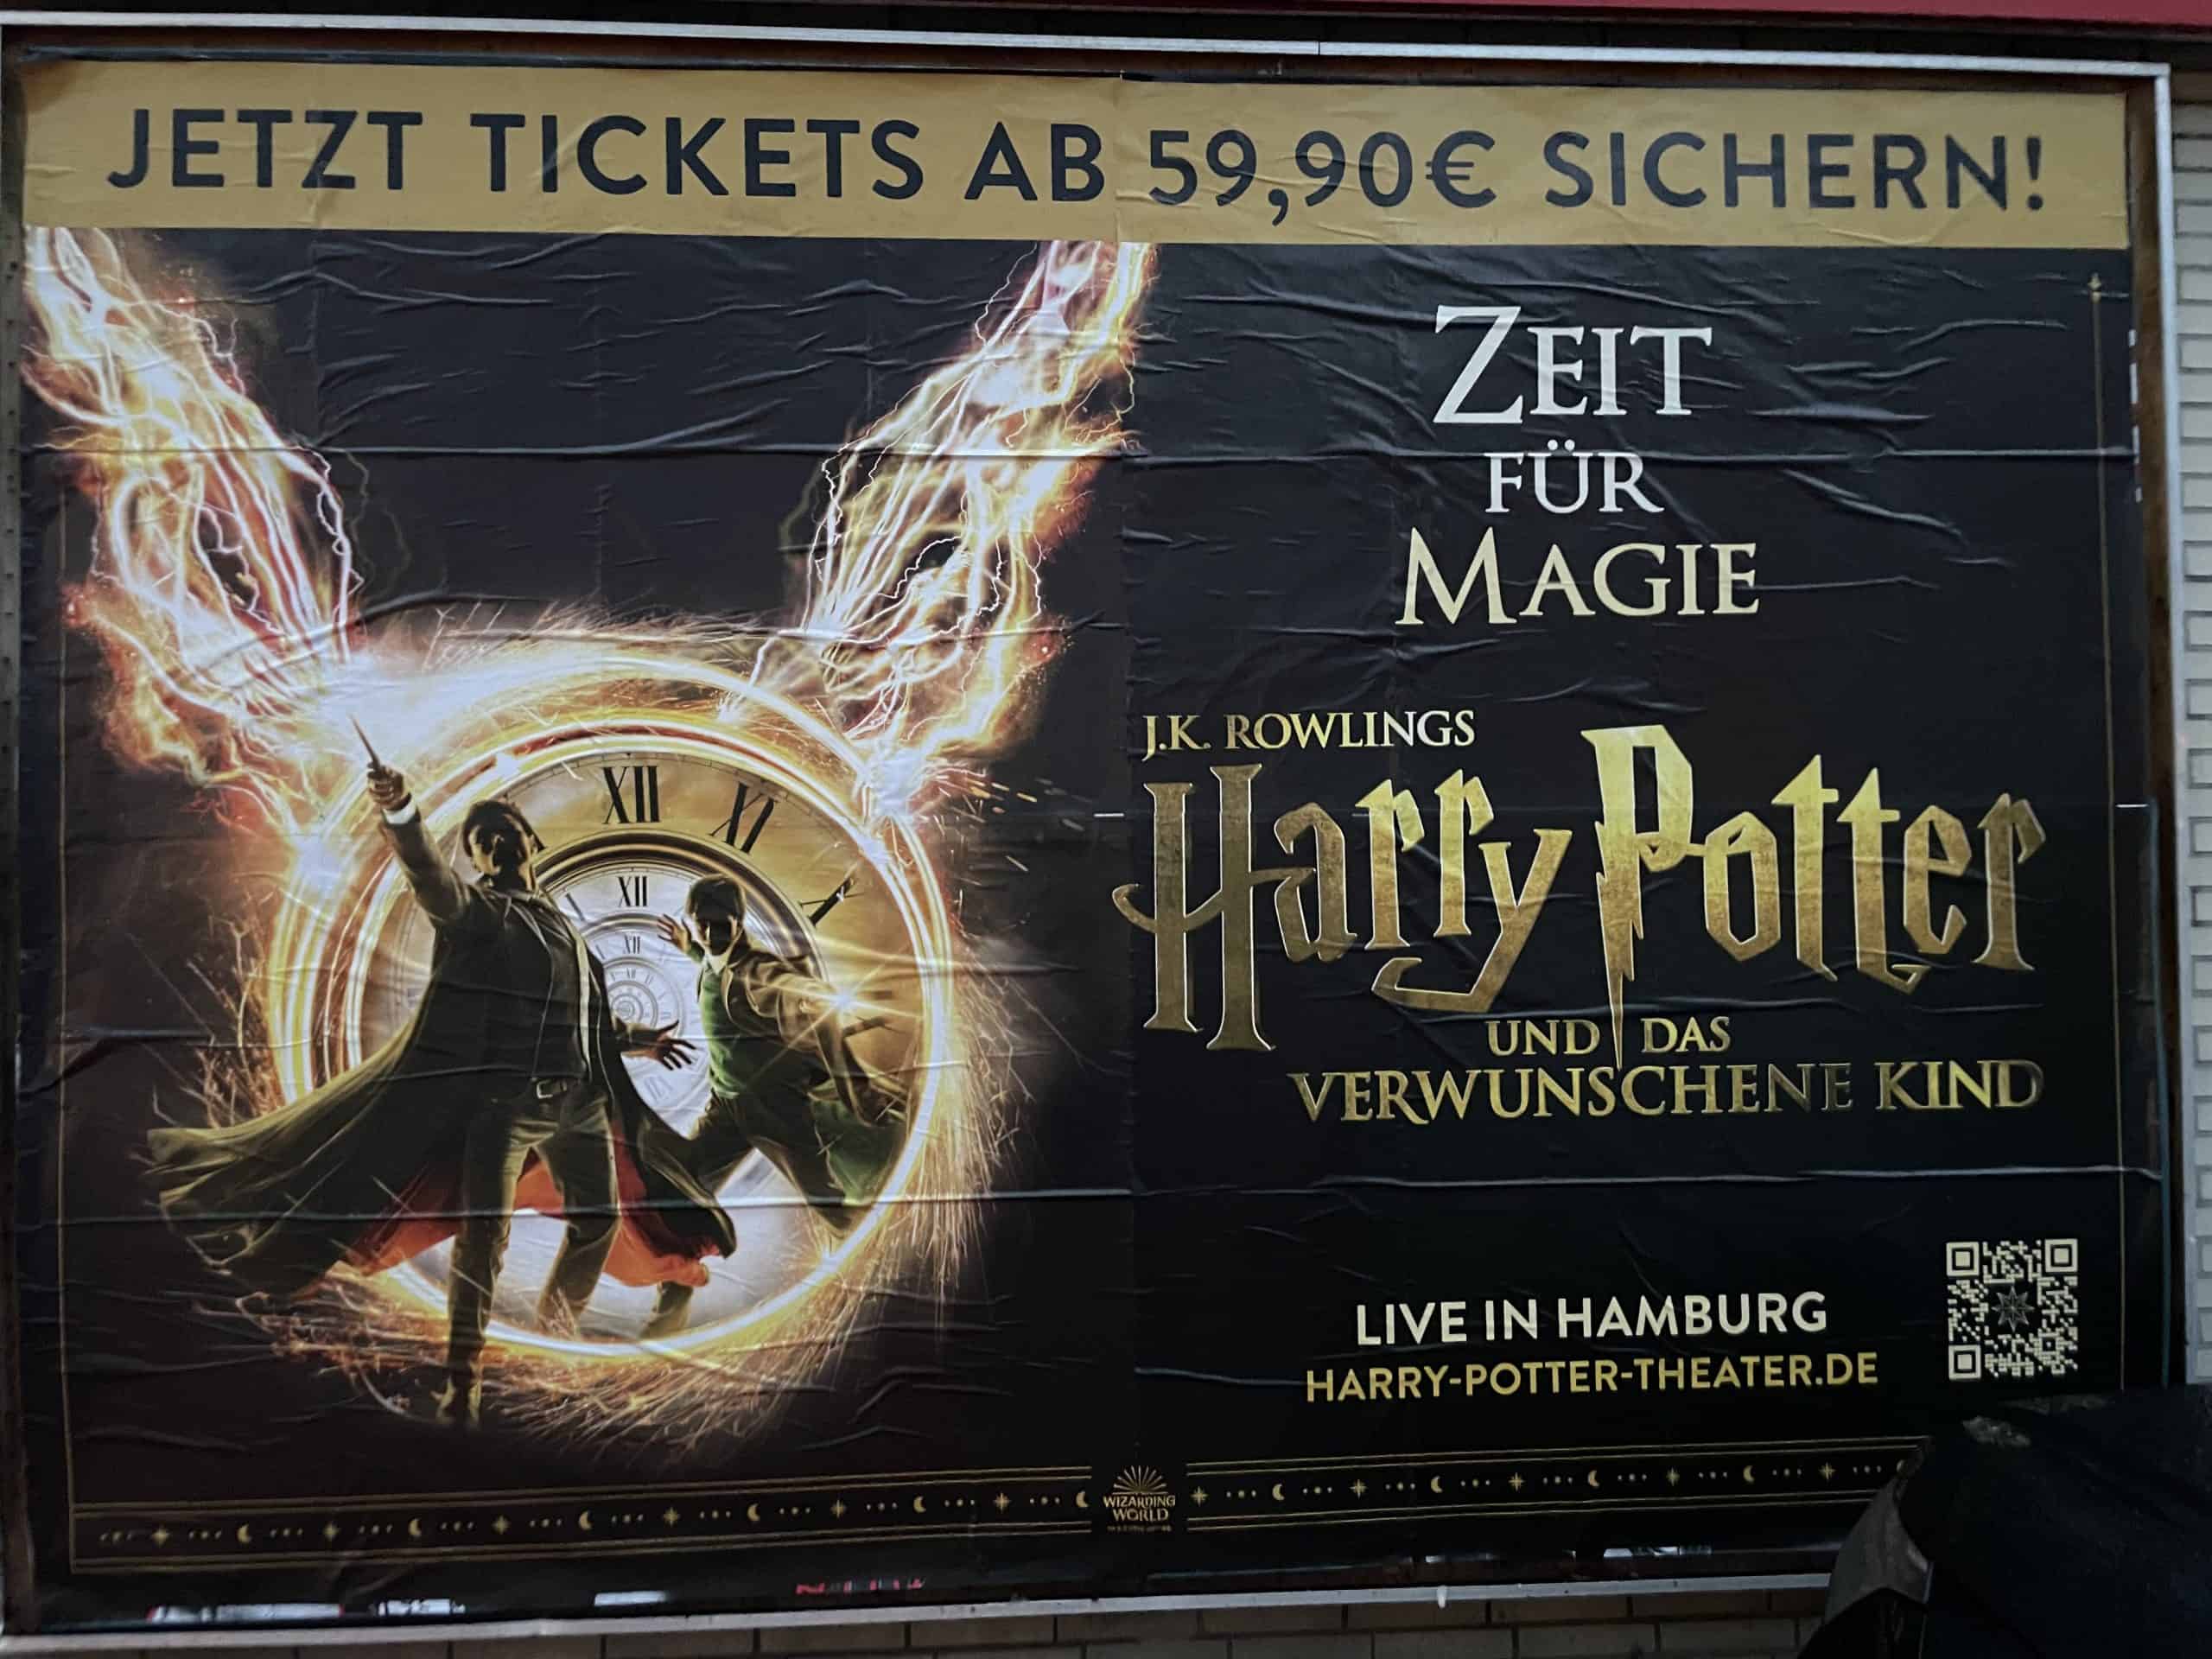 Plakatwerbung für das Harry Potter Theaterstück in Hamburg